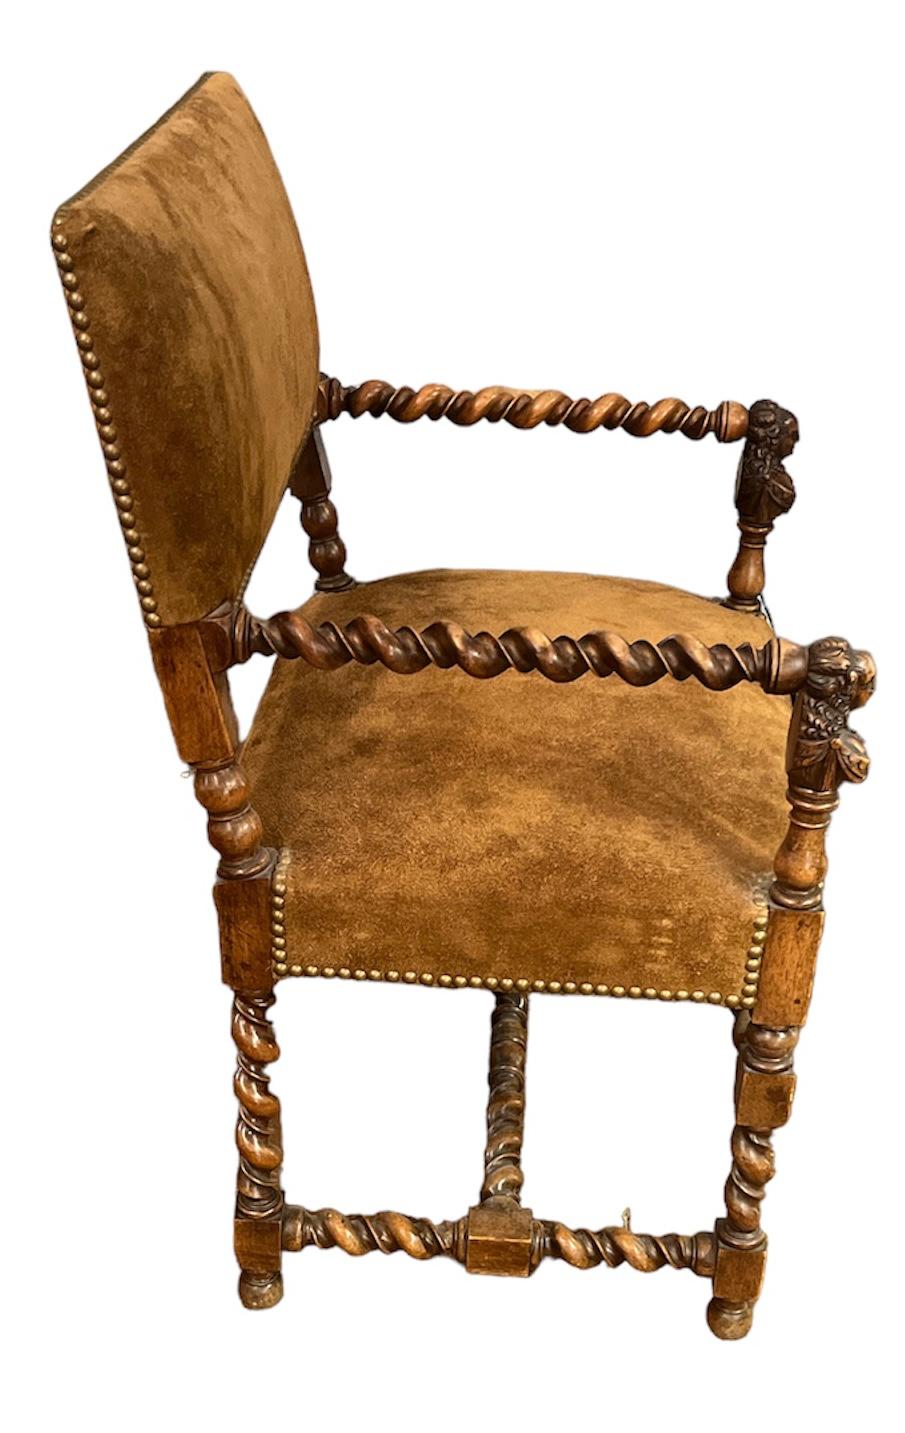 Paire de chaises à accoudoirs en orge et daim, sculptées à la main, du 19e siècle. 
Les bras sont sculptés d'une figure de femme à l'avant.  Les bras et les jambes sont sculptés en torsion. Le cuir est en très bon état. 
